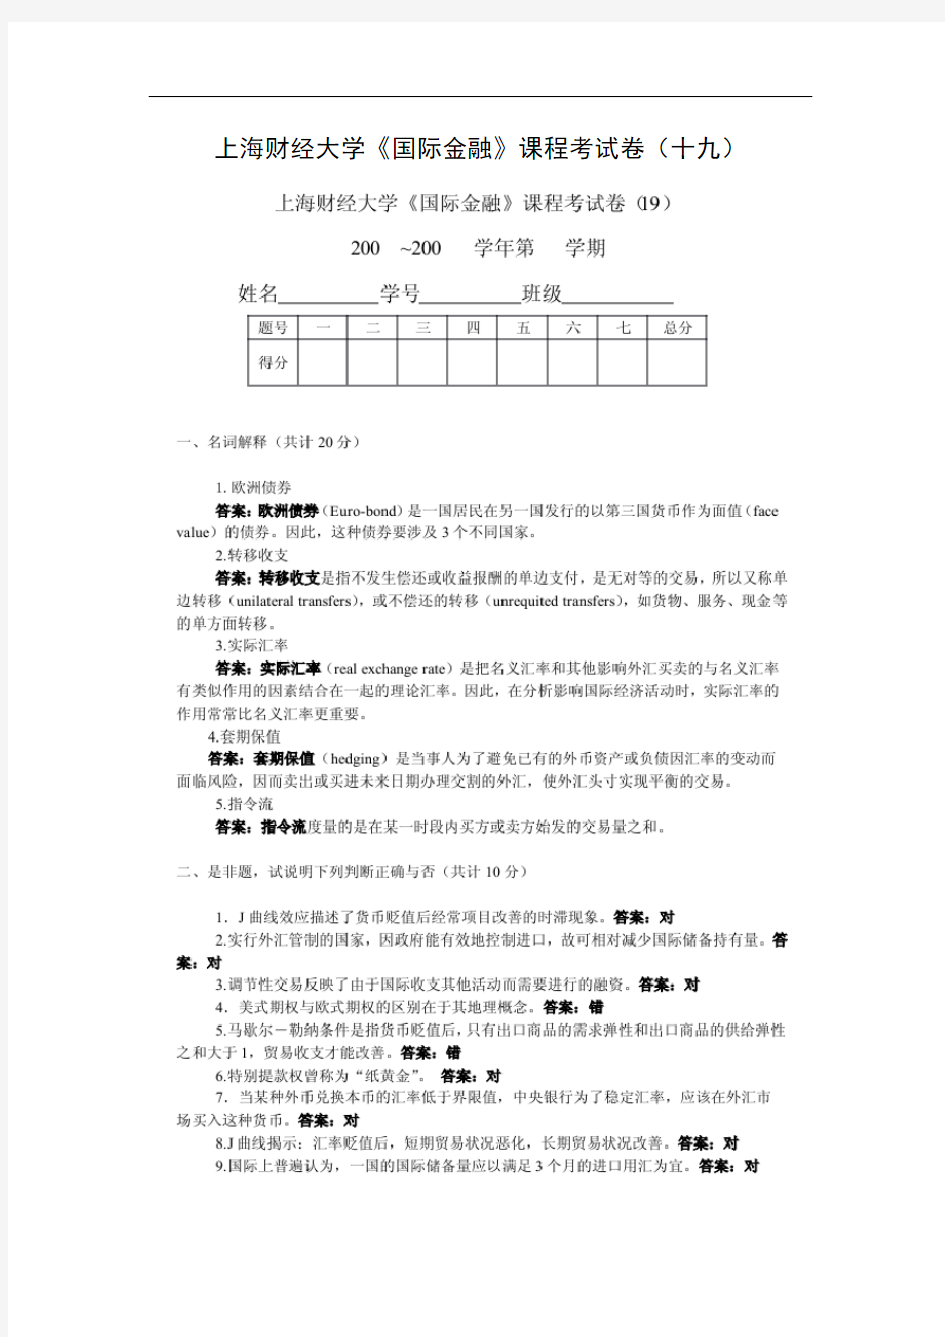 上海财经大学《国际金融》课程考试卷(十九)